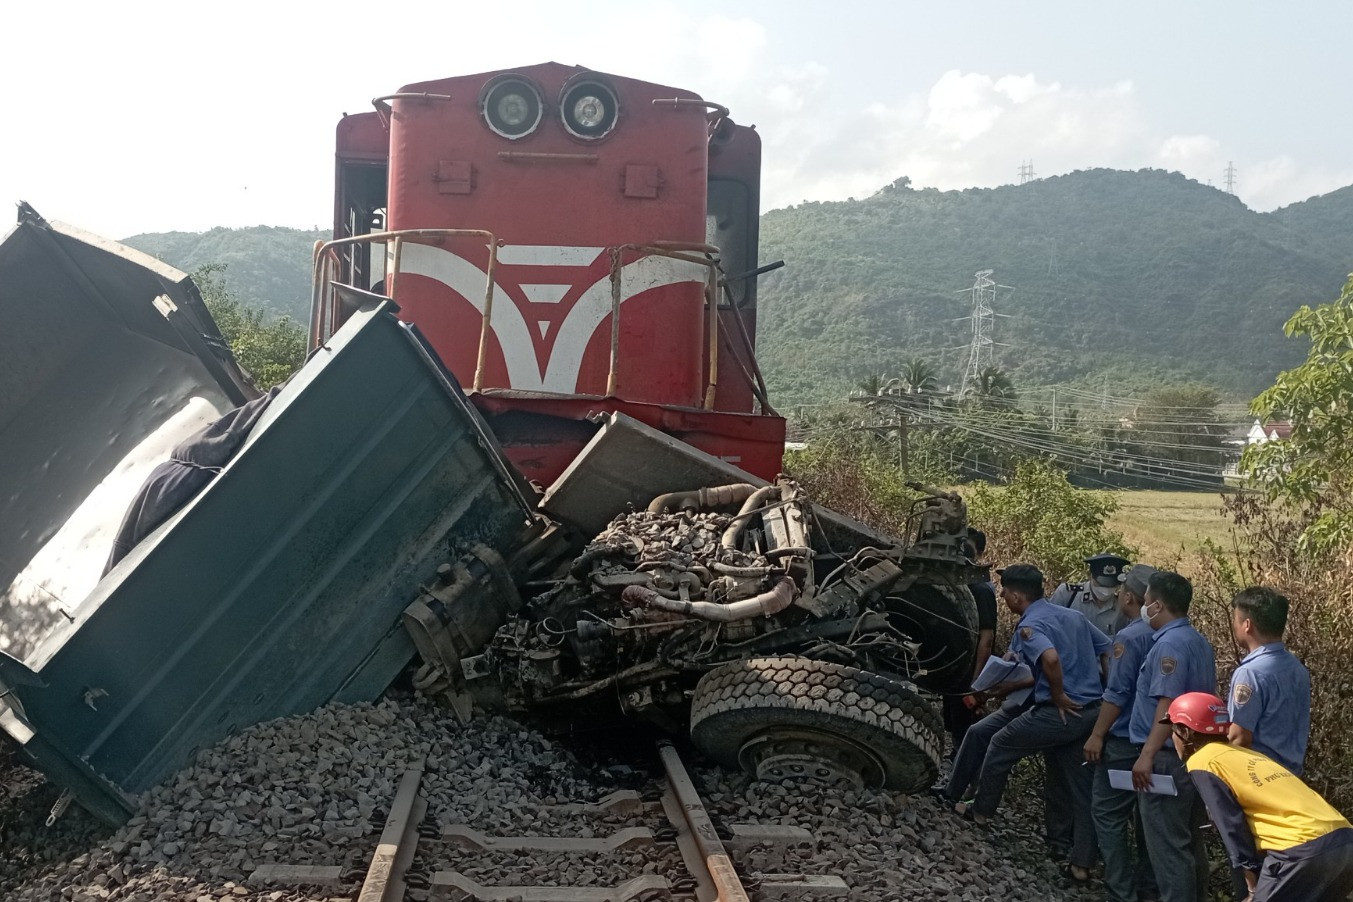 Tài xế xe tải tử vong sau va chạm với tàu hỏa ở Khánh Hòa